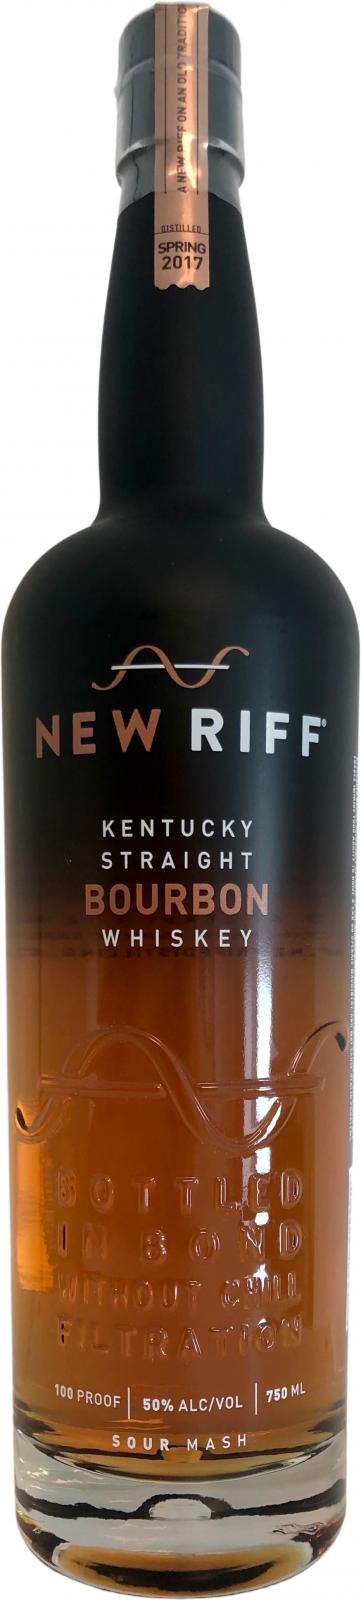 New Riff 2017 Bottled in Bond 2021 Release Bourbon Whiskey